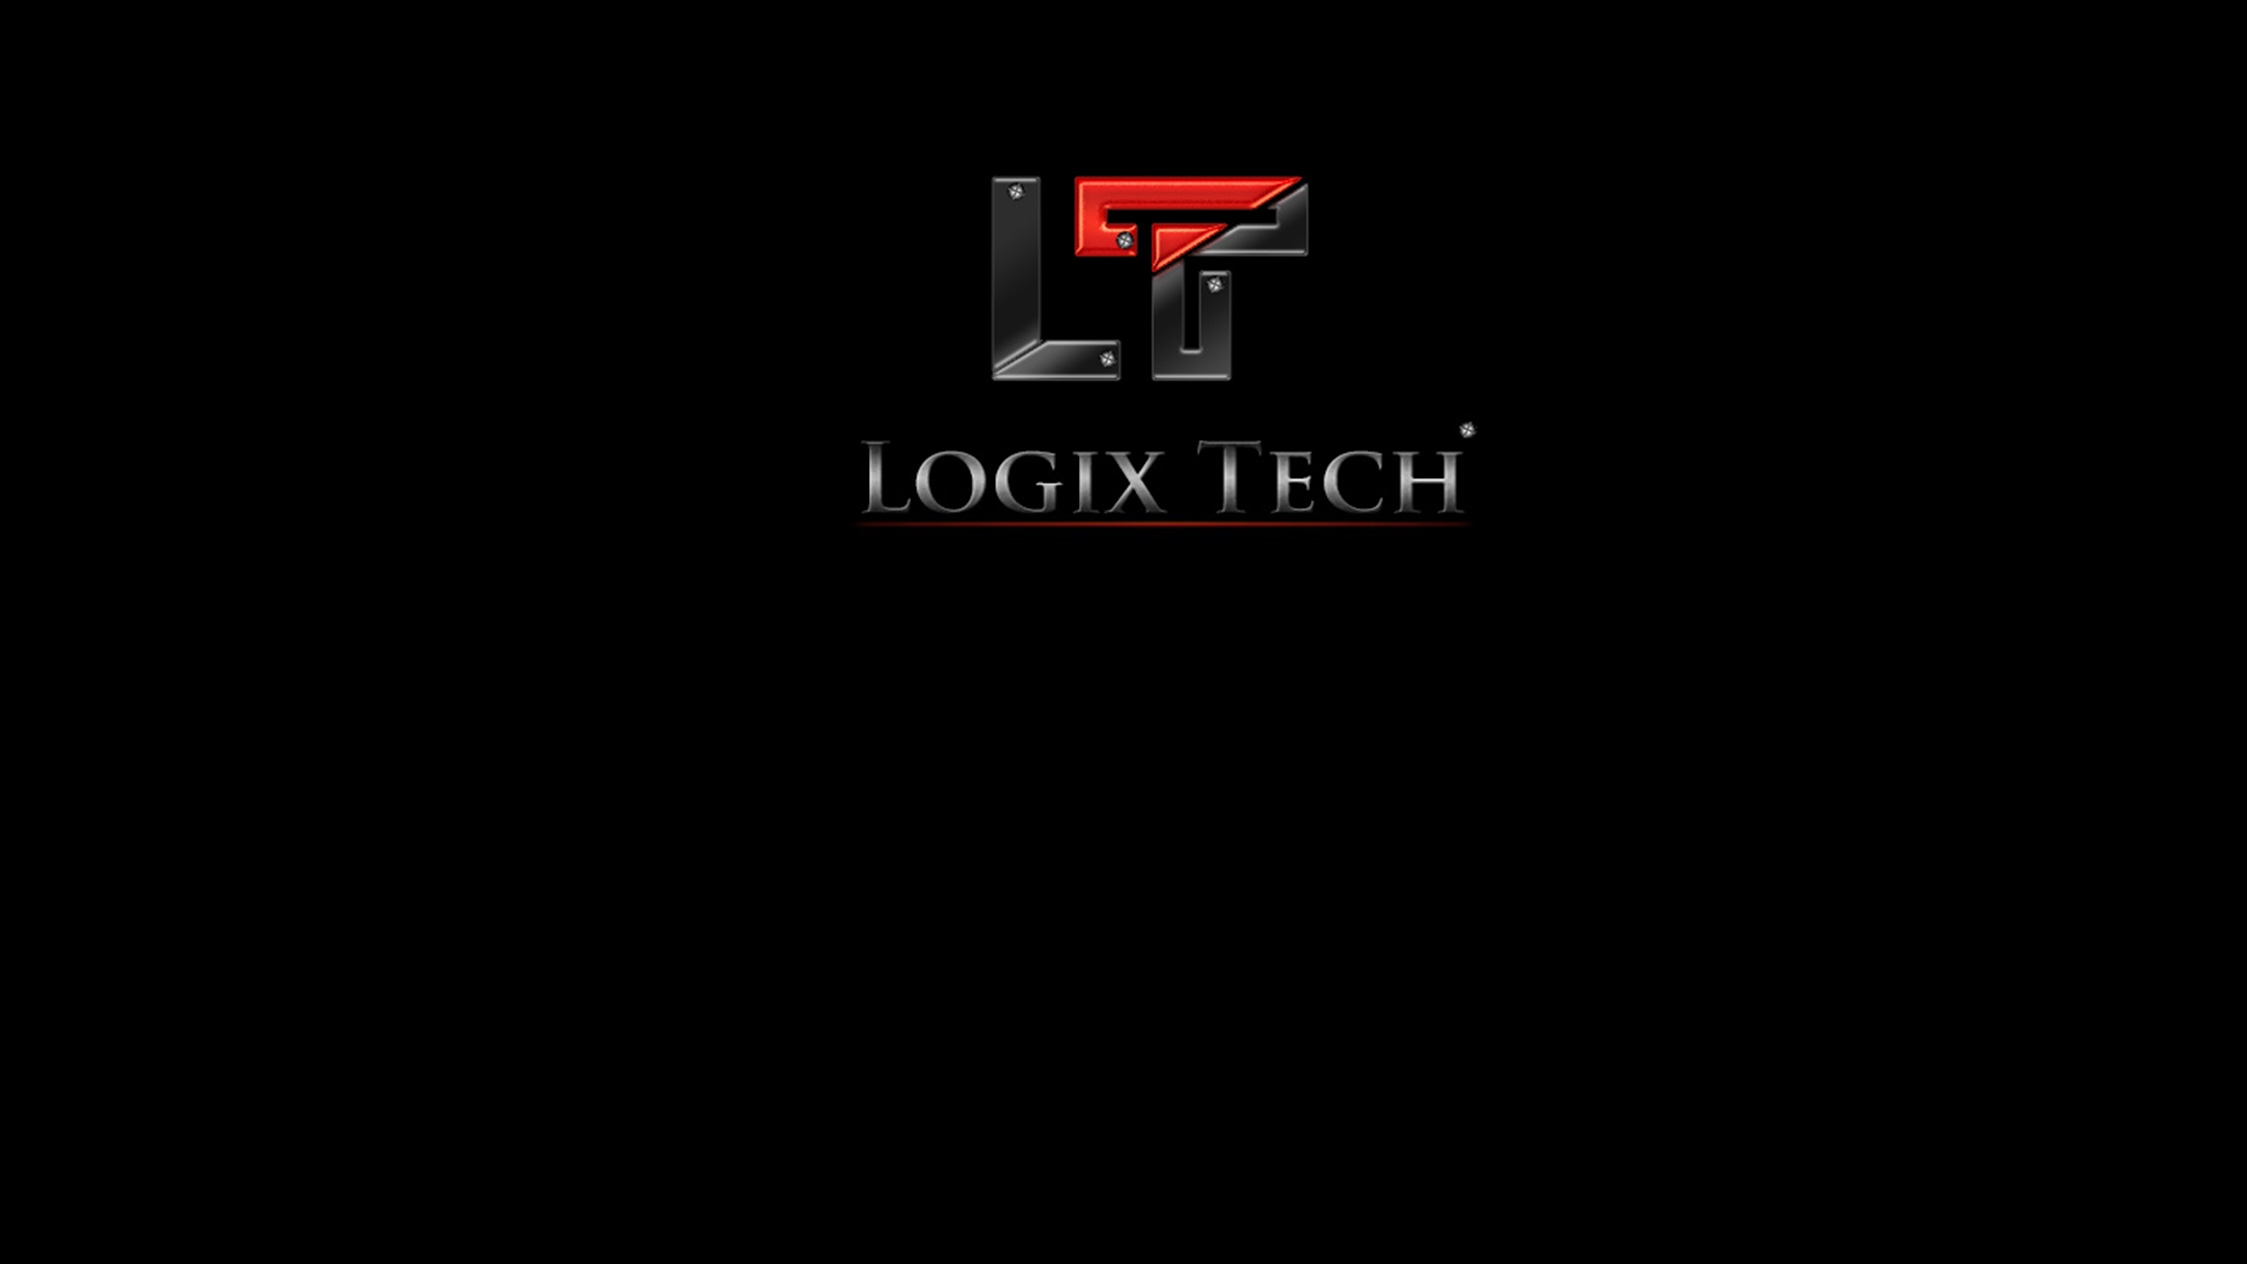 Logix Tech